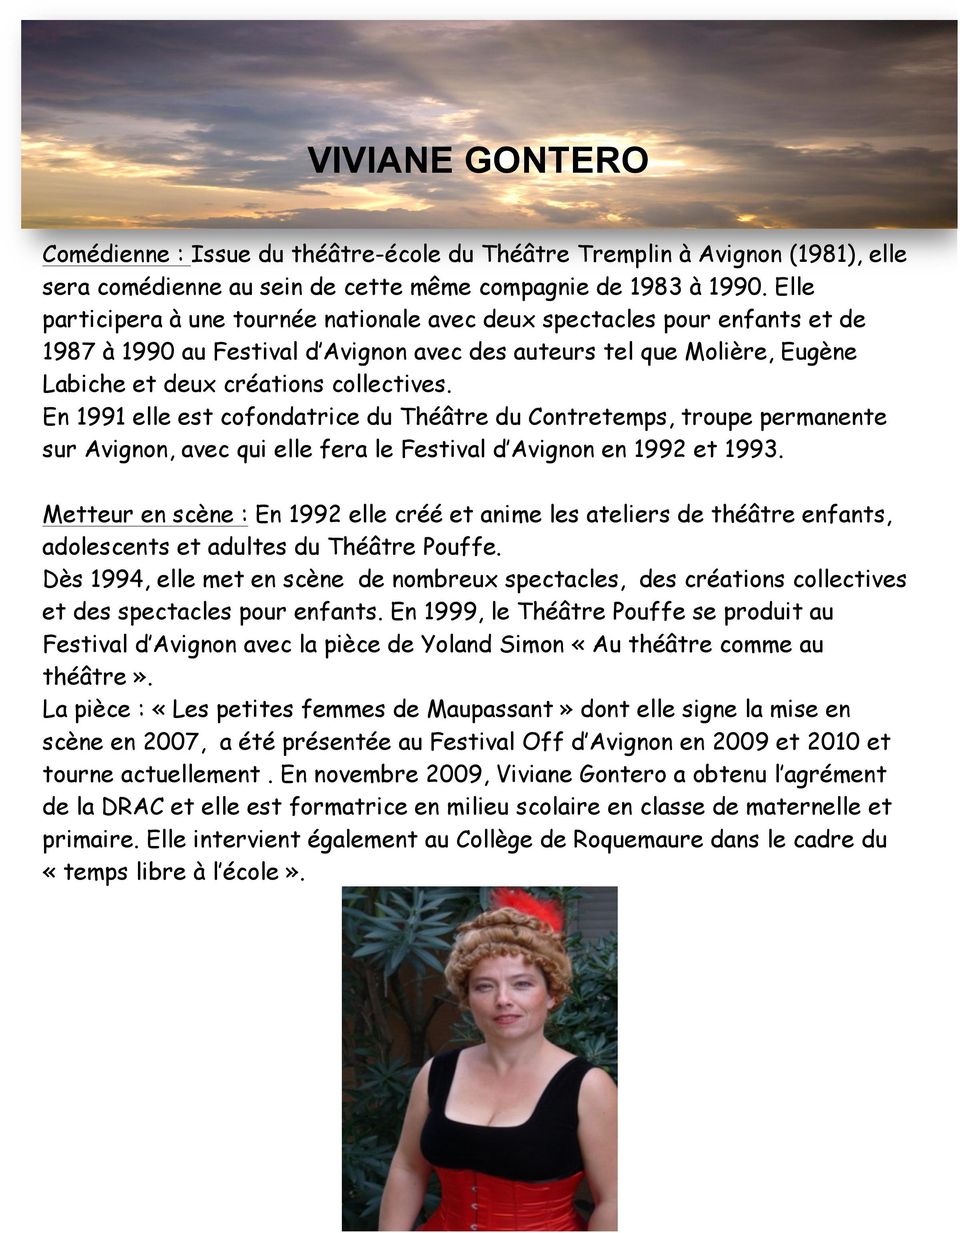 En 1991 elle est cofondatrice du Théâtre du Contretemps, troupe permanente sur Avignon, avec qui elle fera le Festival d Avignon en 1992 et 1993.